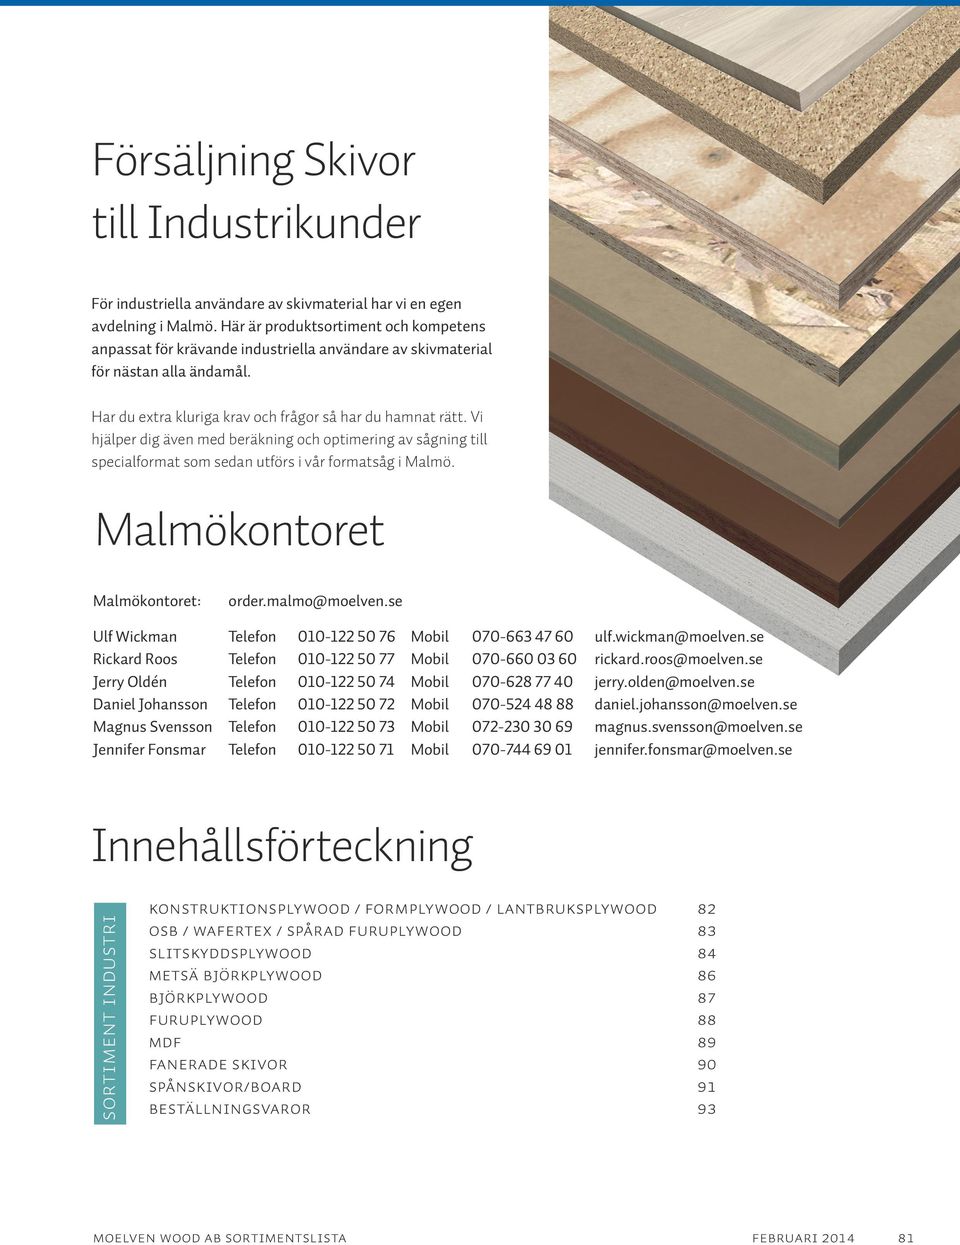 Vi hjälper dig även med beräkning och optimering av sågning till specialformat som sedan utförs i vår formatsåg i Malmö. Malmökontoret Malmökontoret: order.malmo@moelven.